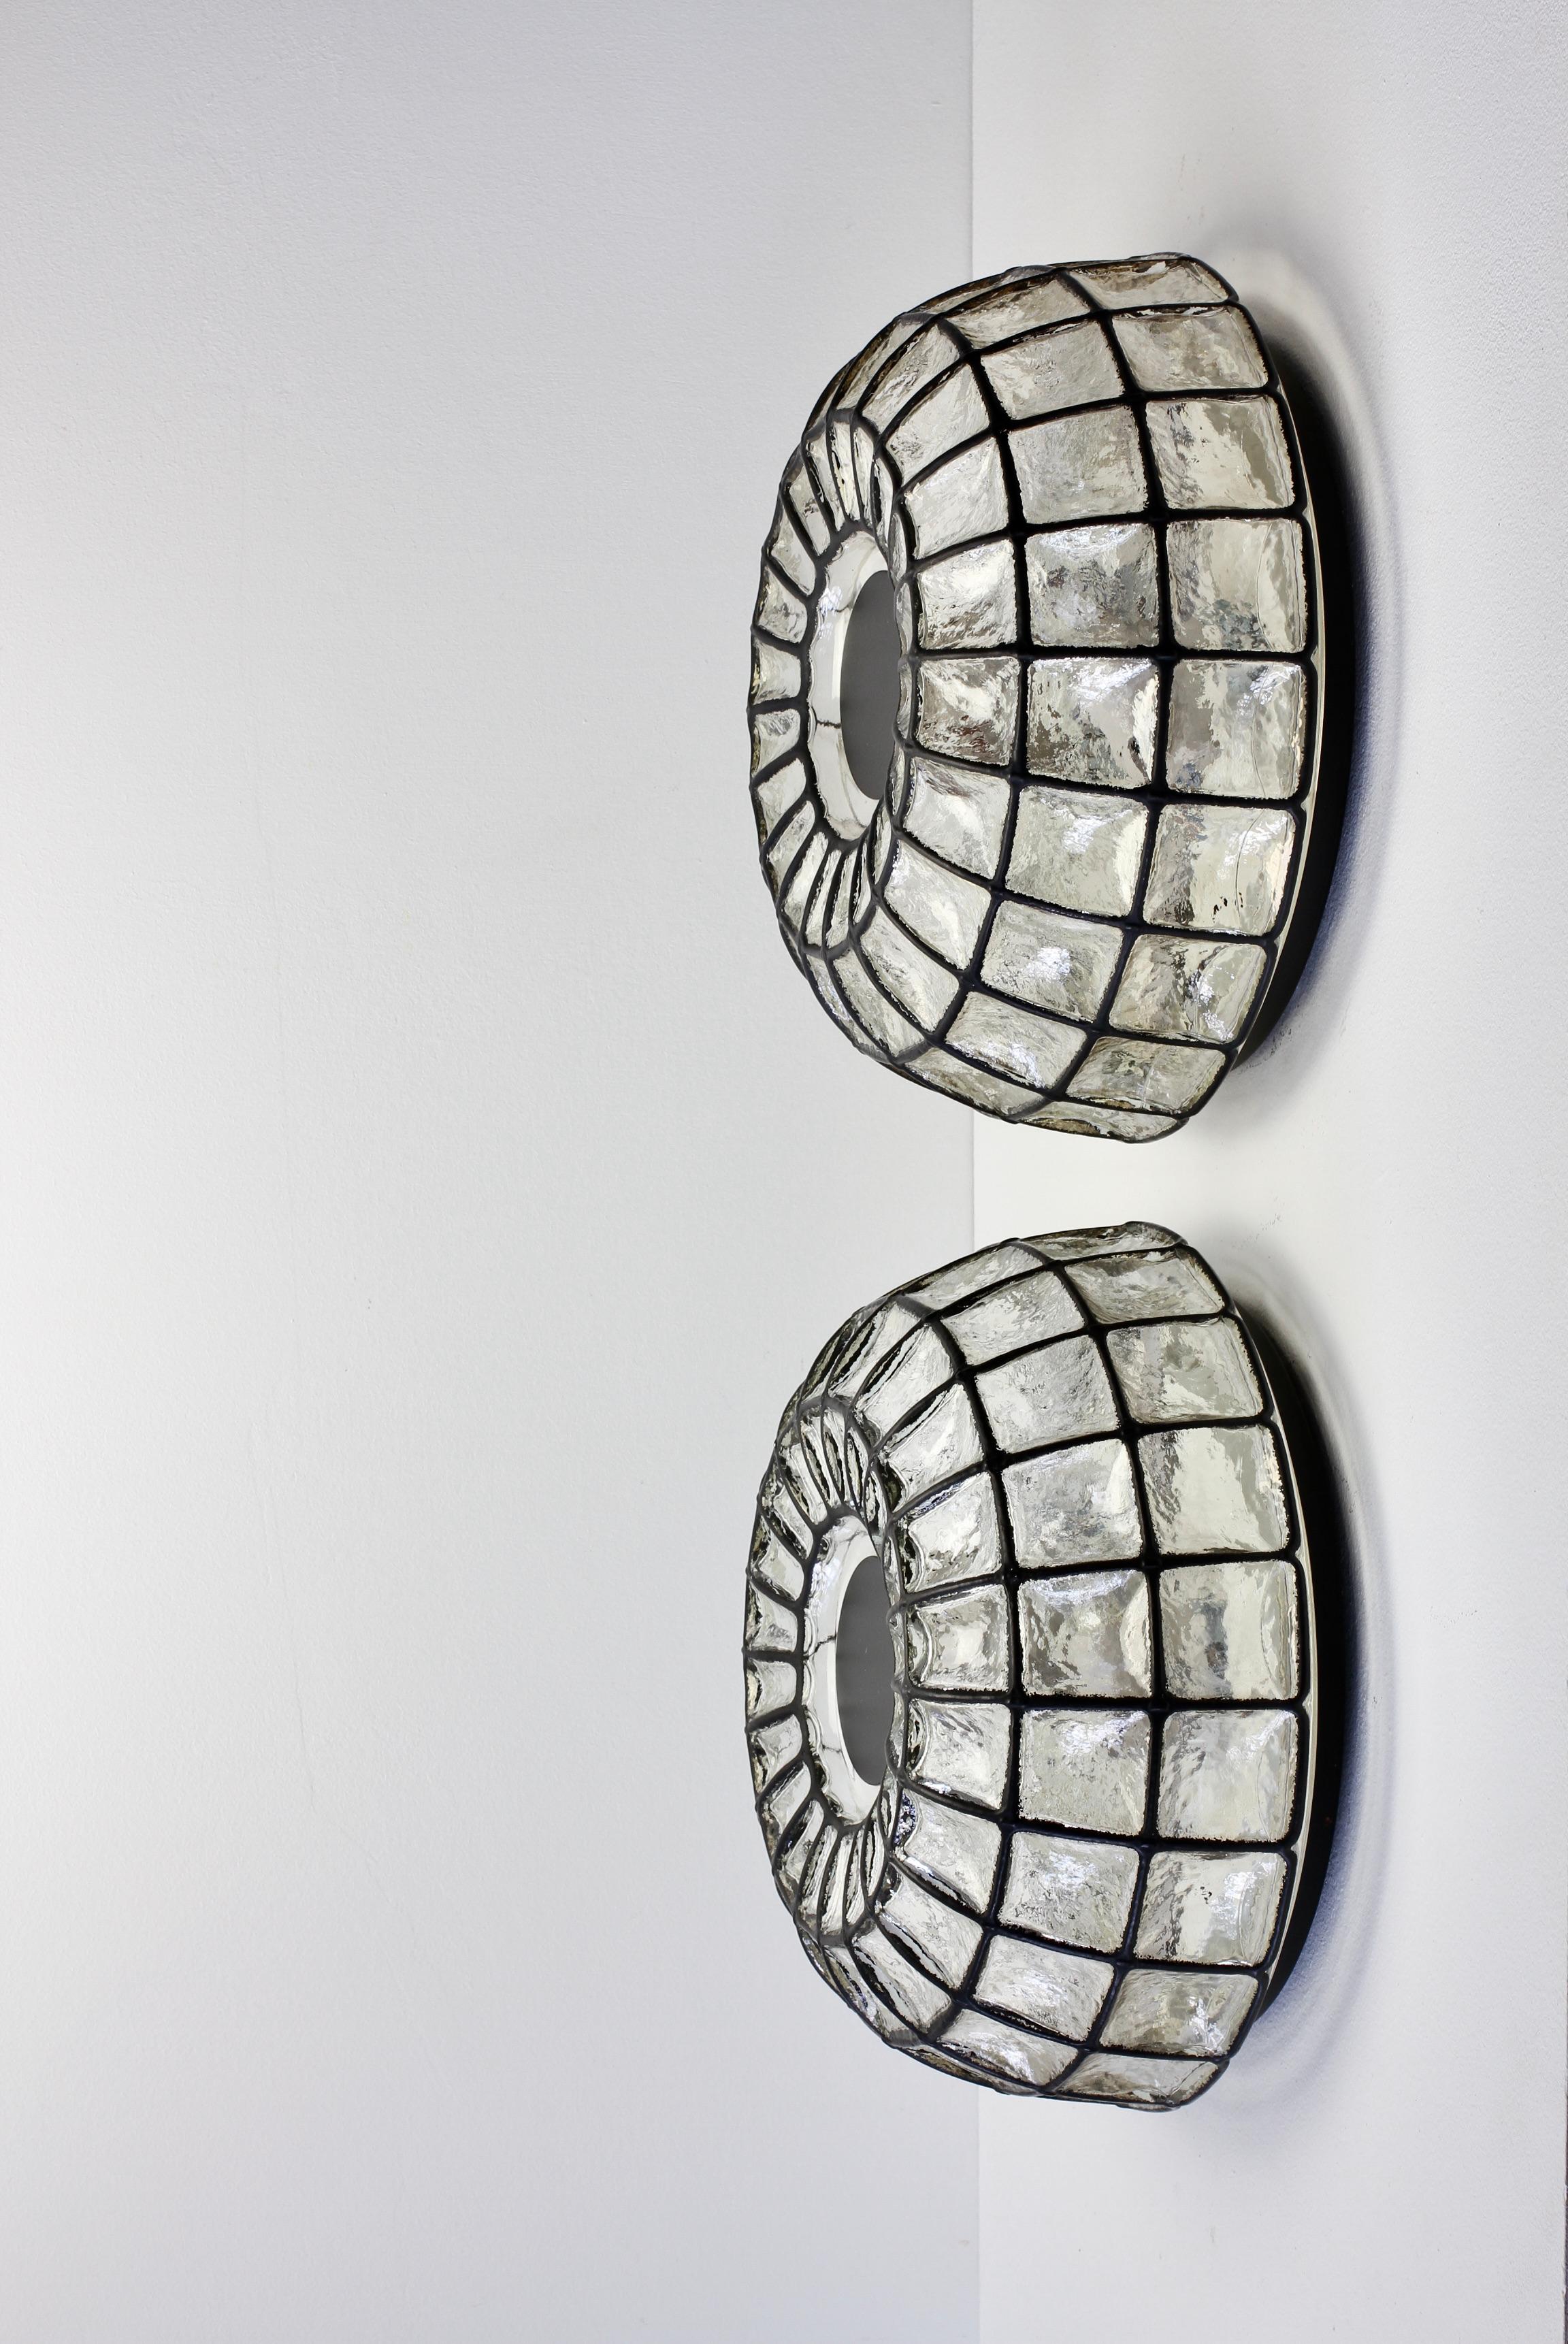 Paar seltene, extra große Paar Midcentury modern Vintage minimal runden gewölbten geometrischen geformt bündig montieren Wand oder Decke Licht / Lampe Armaturen von Glashütte Limburg, Deutschland, um 1965. Das wabenförmige Blasenglas wölbt sich